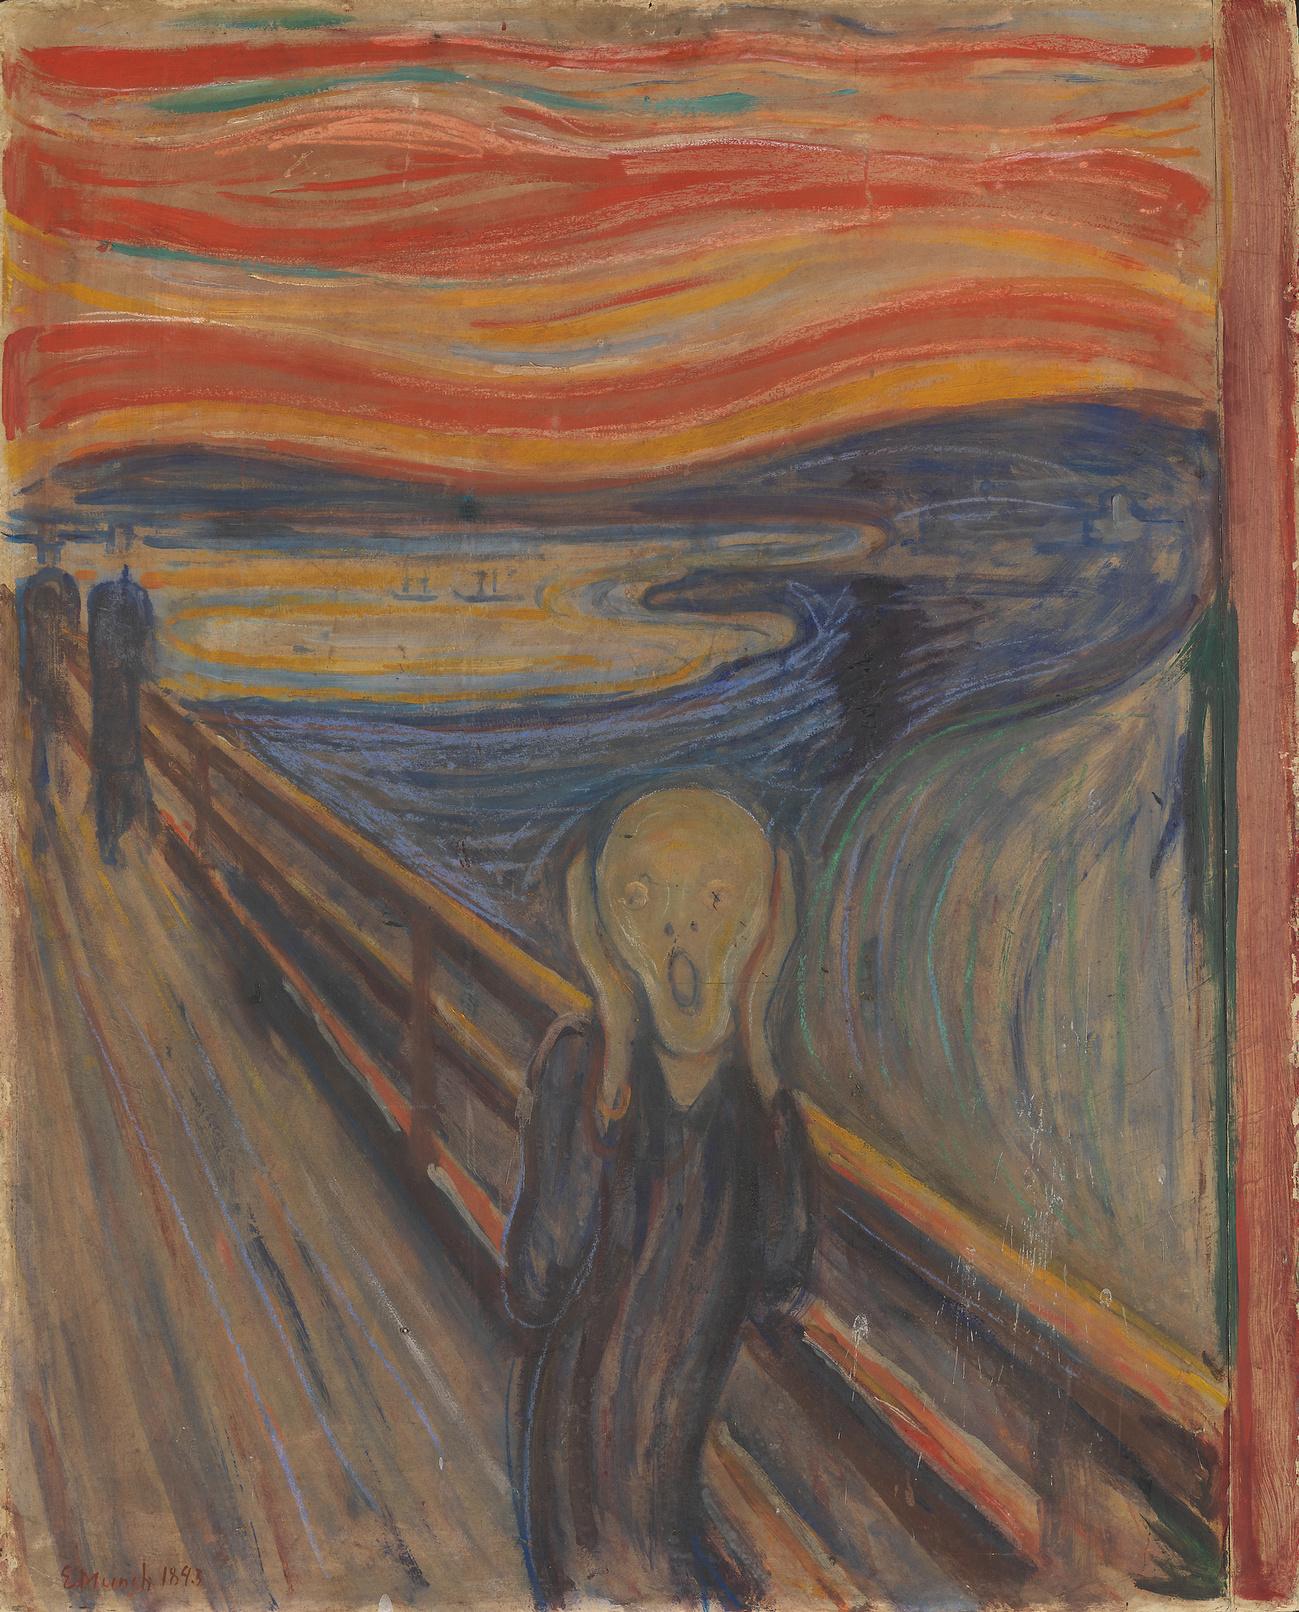 Le Cri d'Edvard Munch exposé au Musée national de Norvège